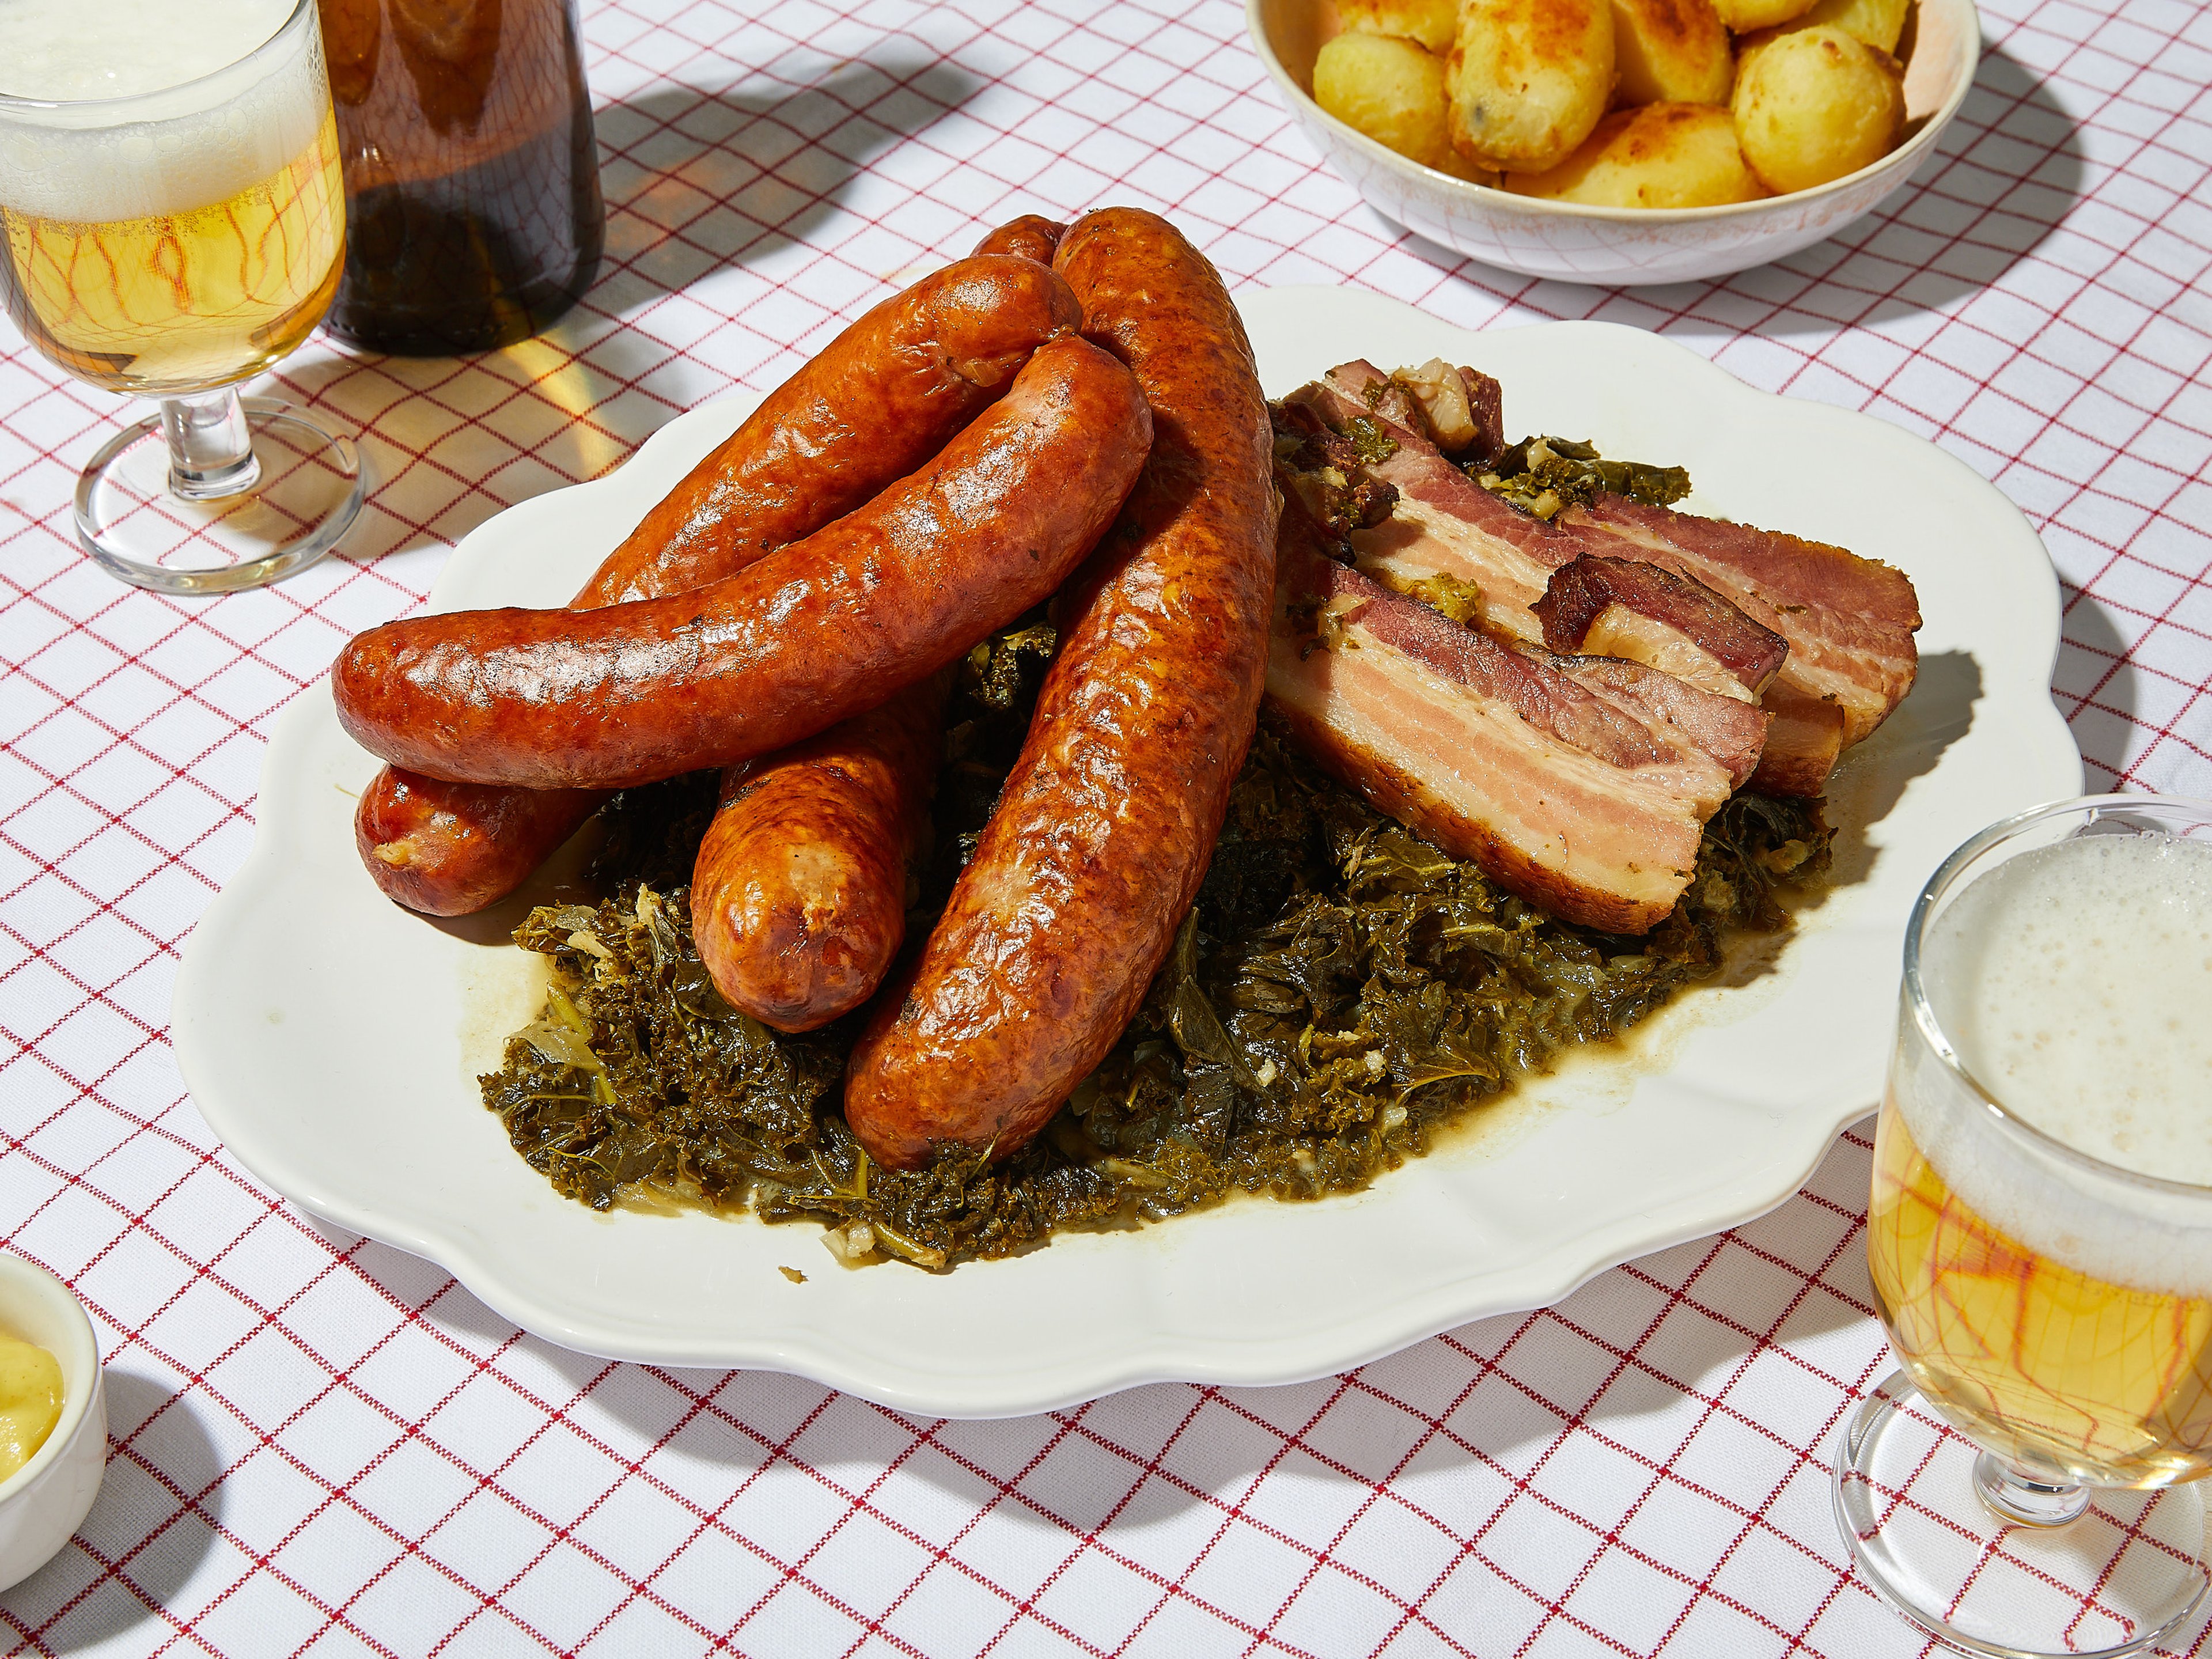 Grünkohl (German-style braised kale with smoked sausage)